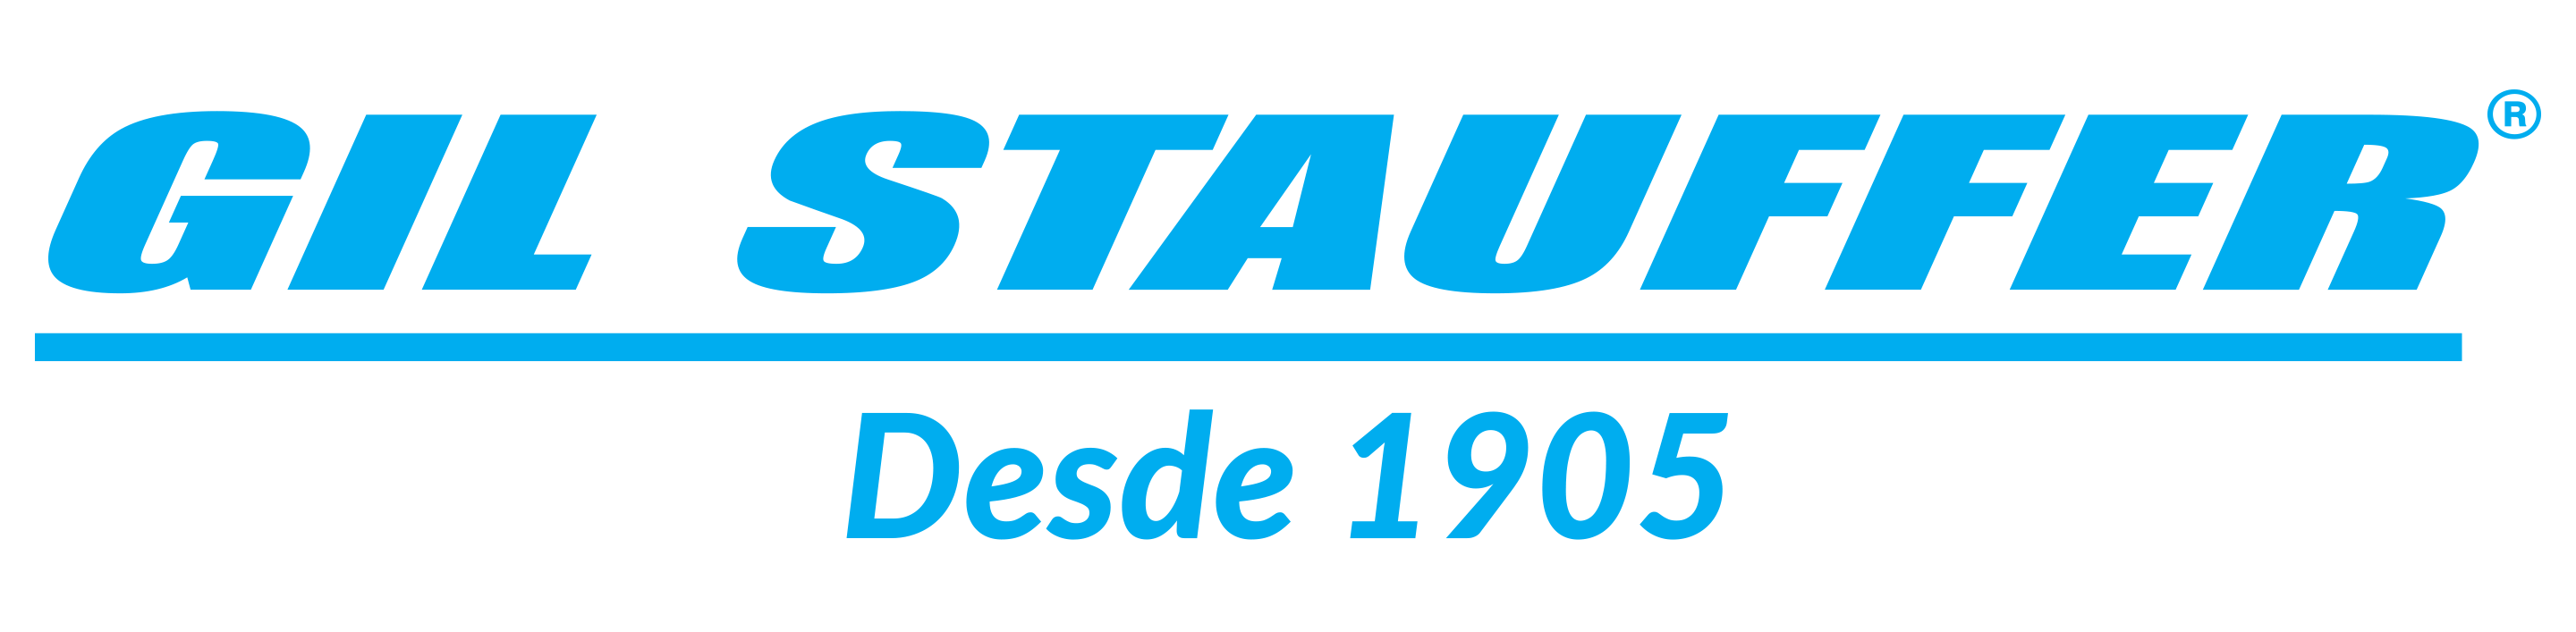 Resultado de imagen de gil stauffer logo